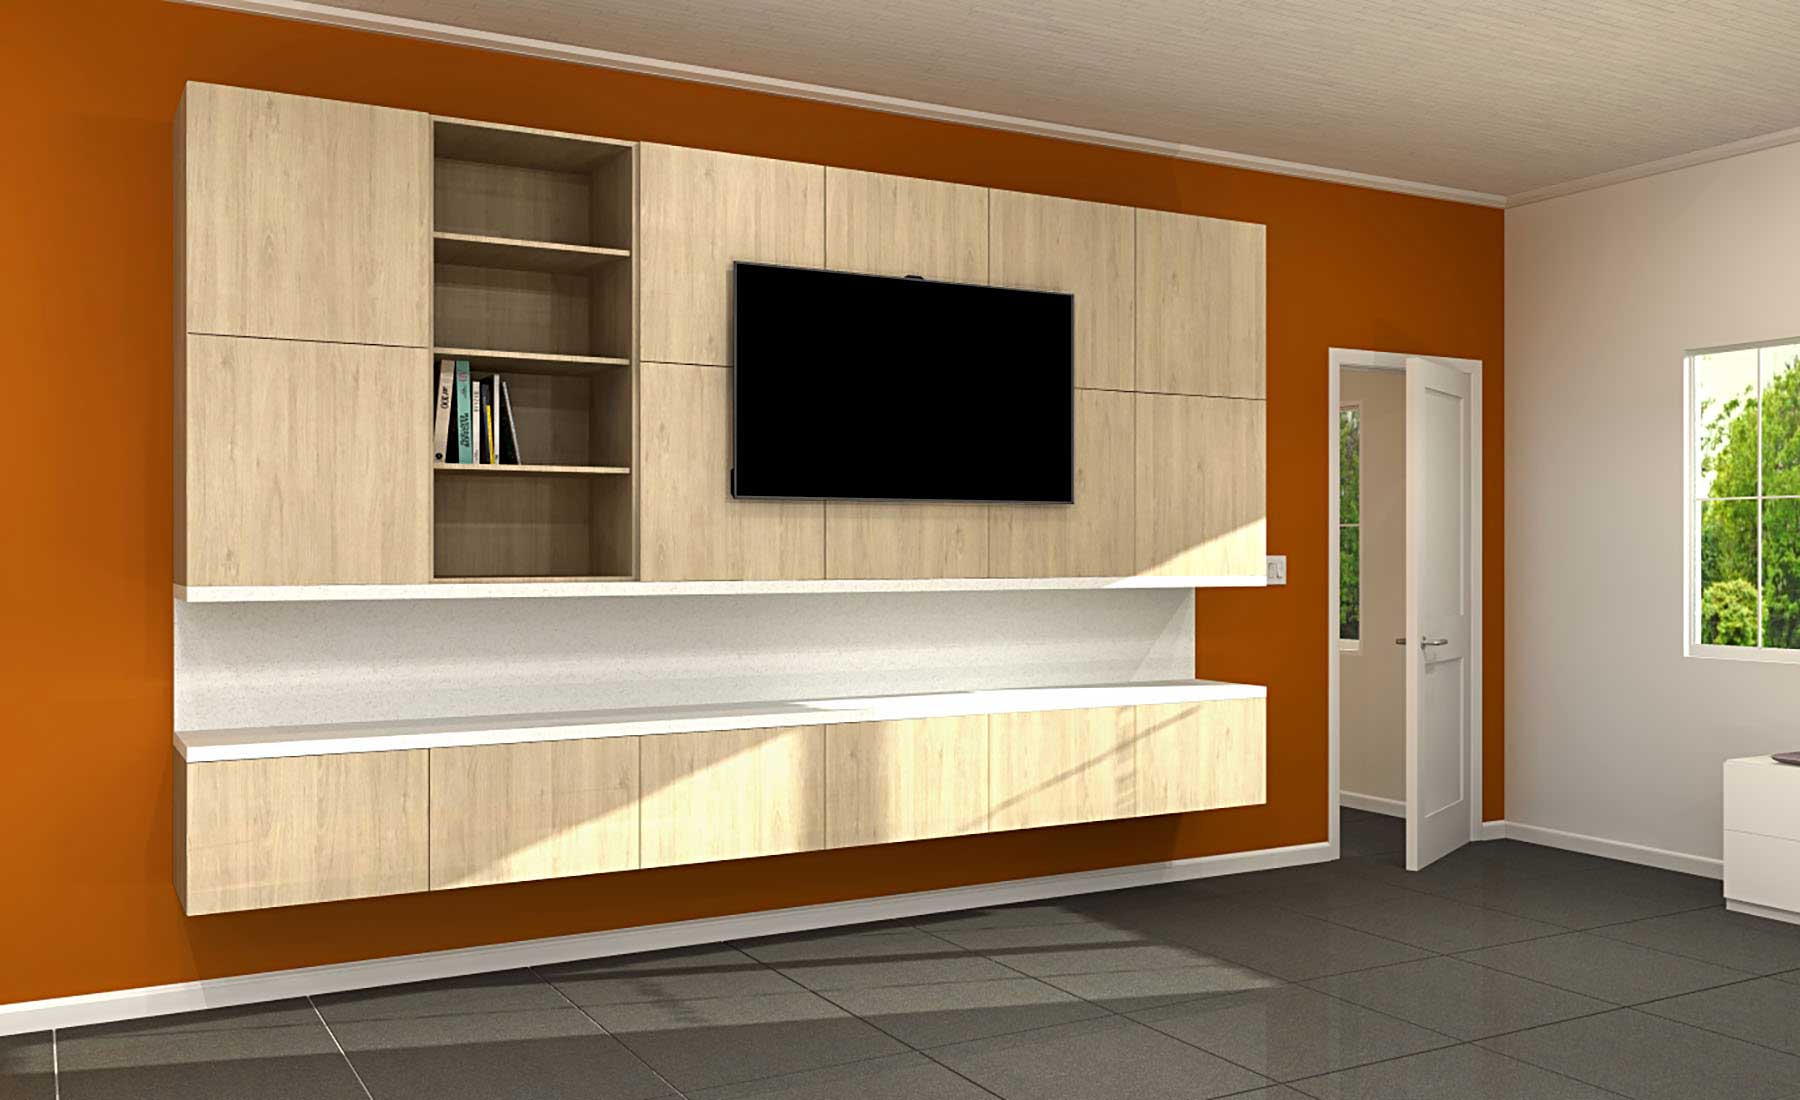 Respectievelijk Duplicatie houder Maximize Your IKEA Master Bedroom Storage With Our Design Ideas